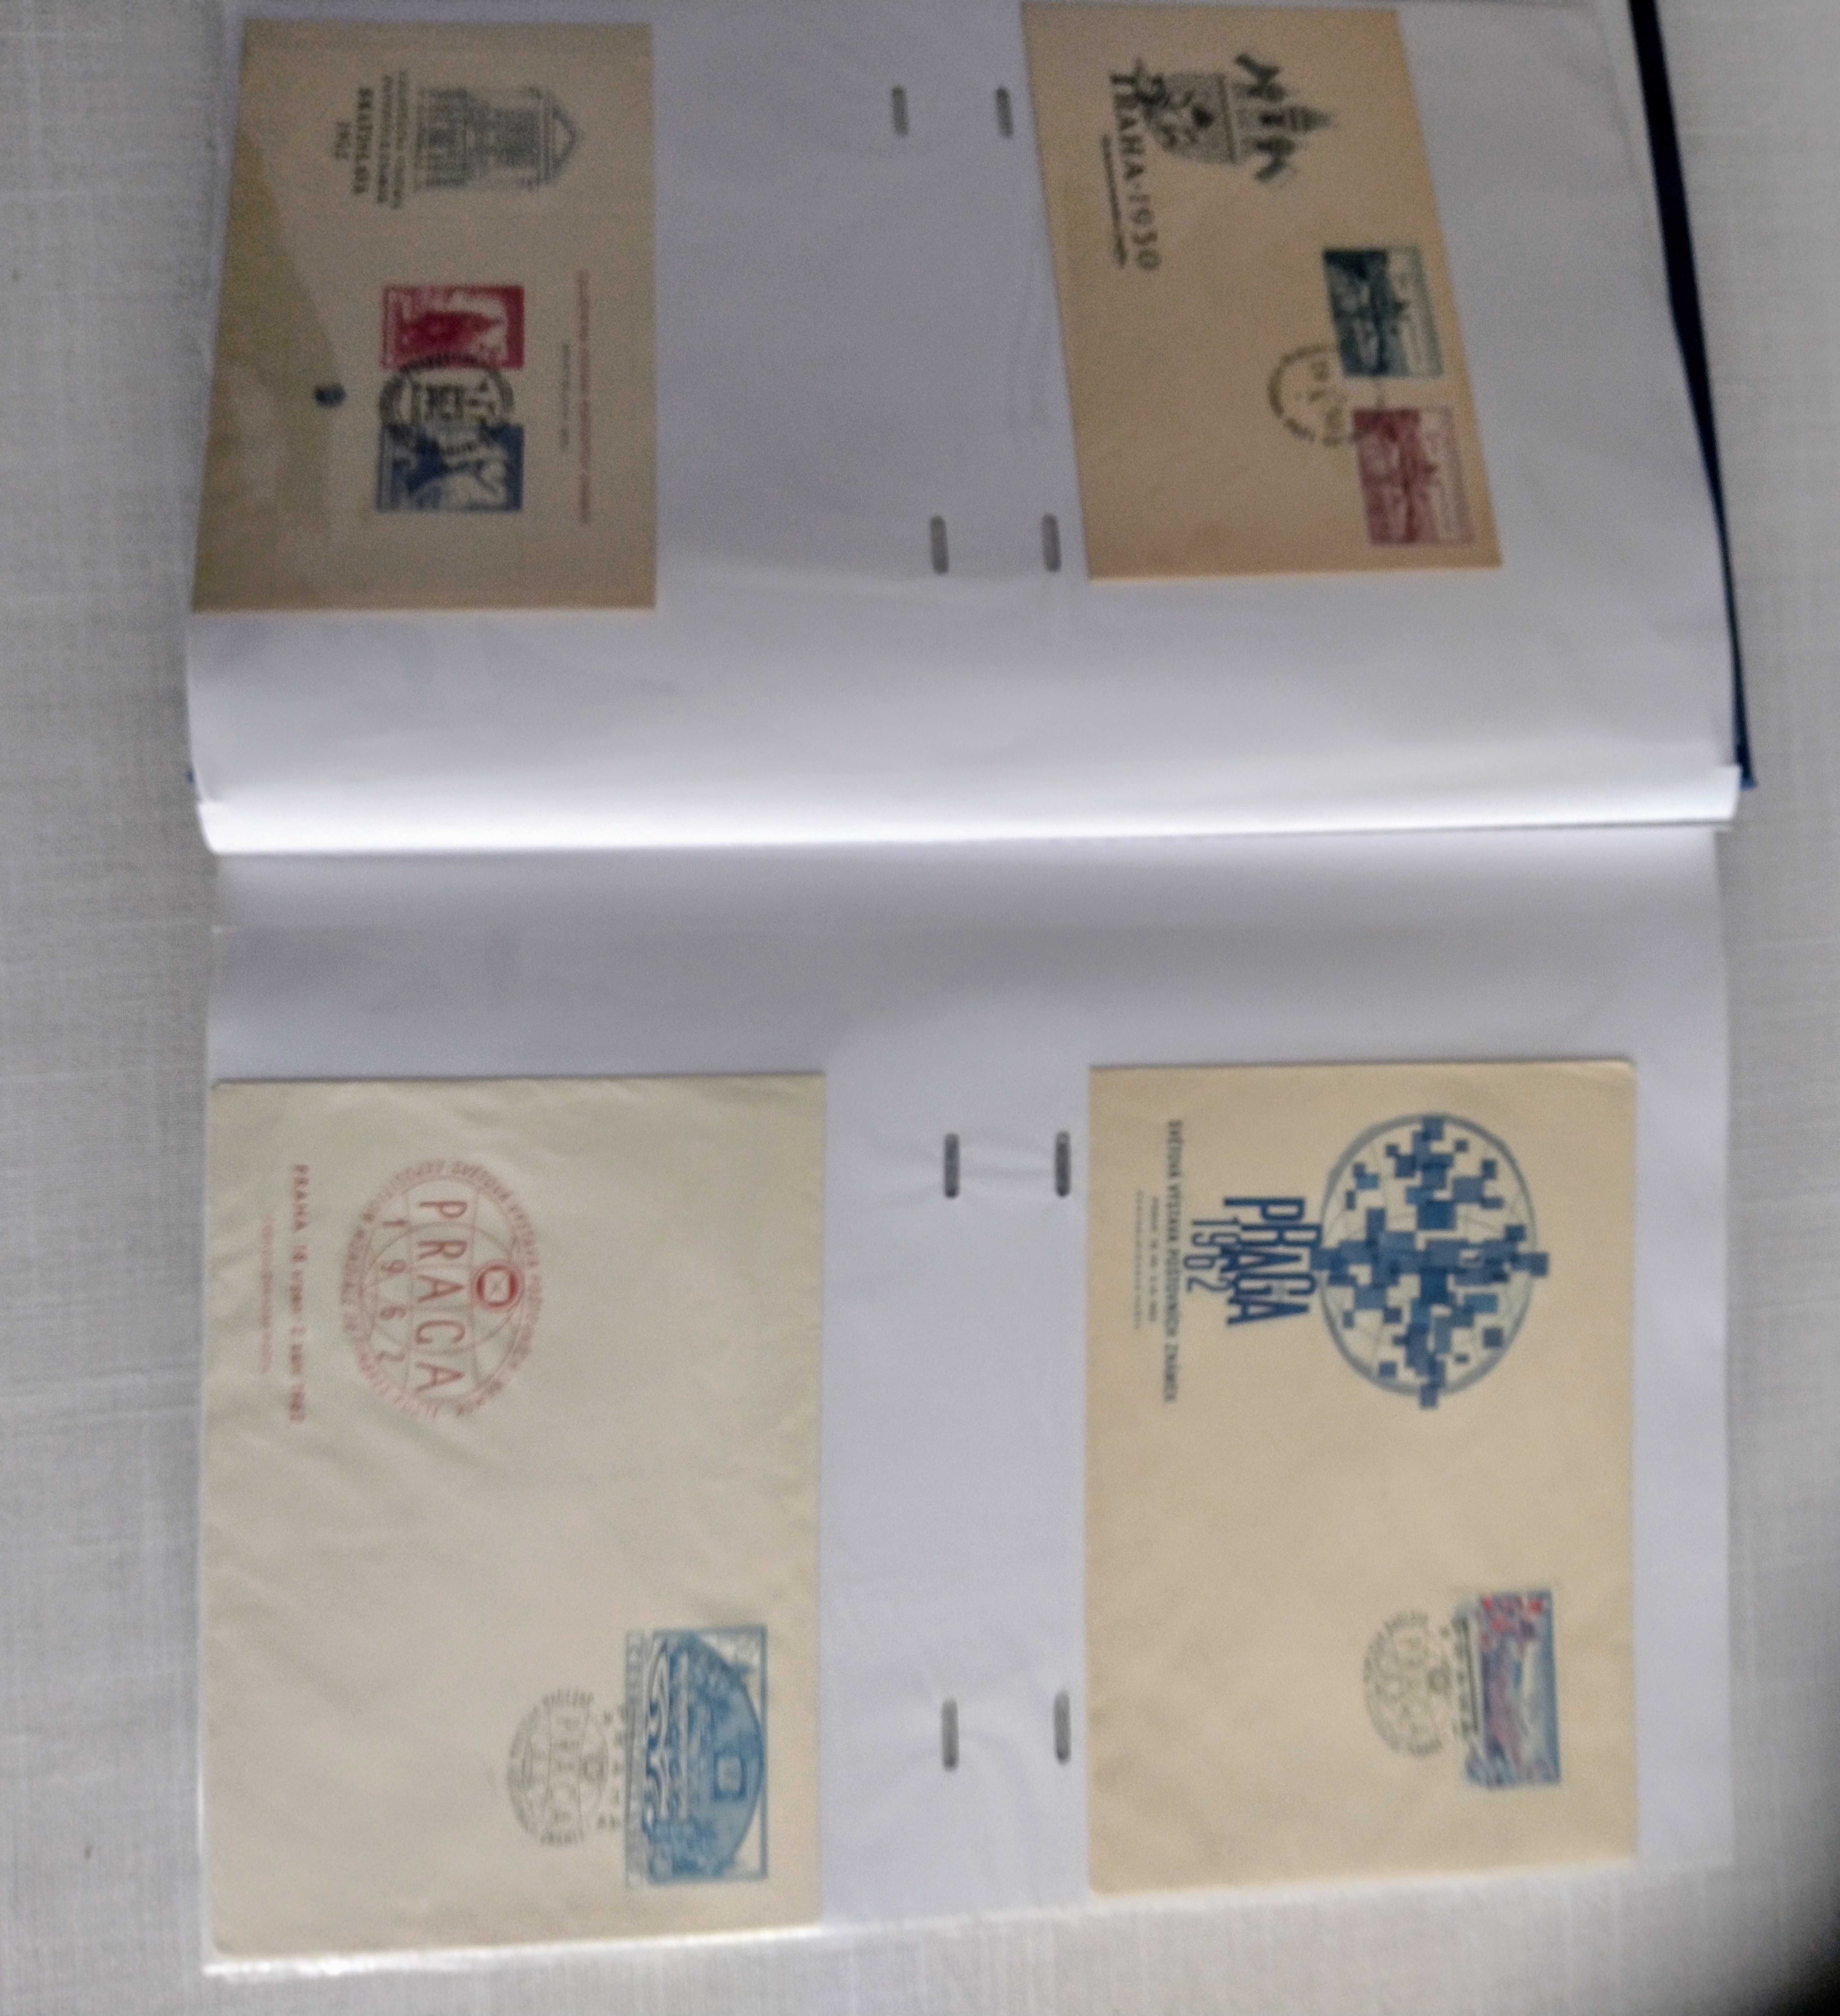 Sprzedam koperty FDC oraz całostki pocztowe polskie i zagraniczne